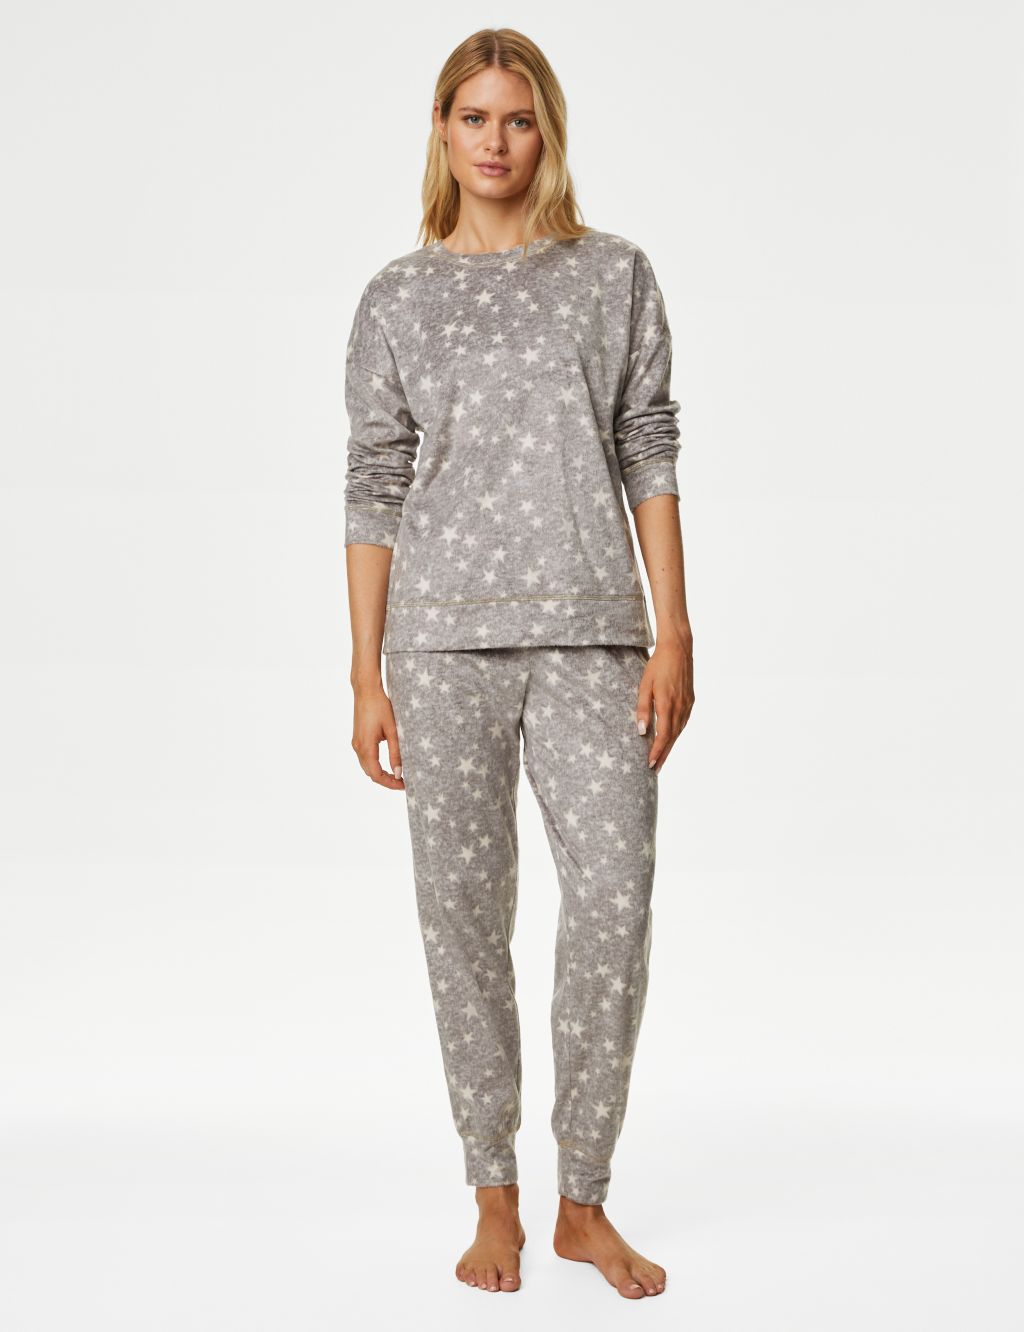 Fleece Star Print Pyjama Set image 1